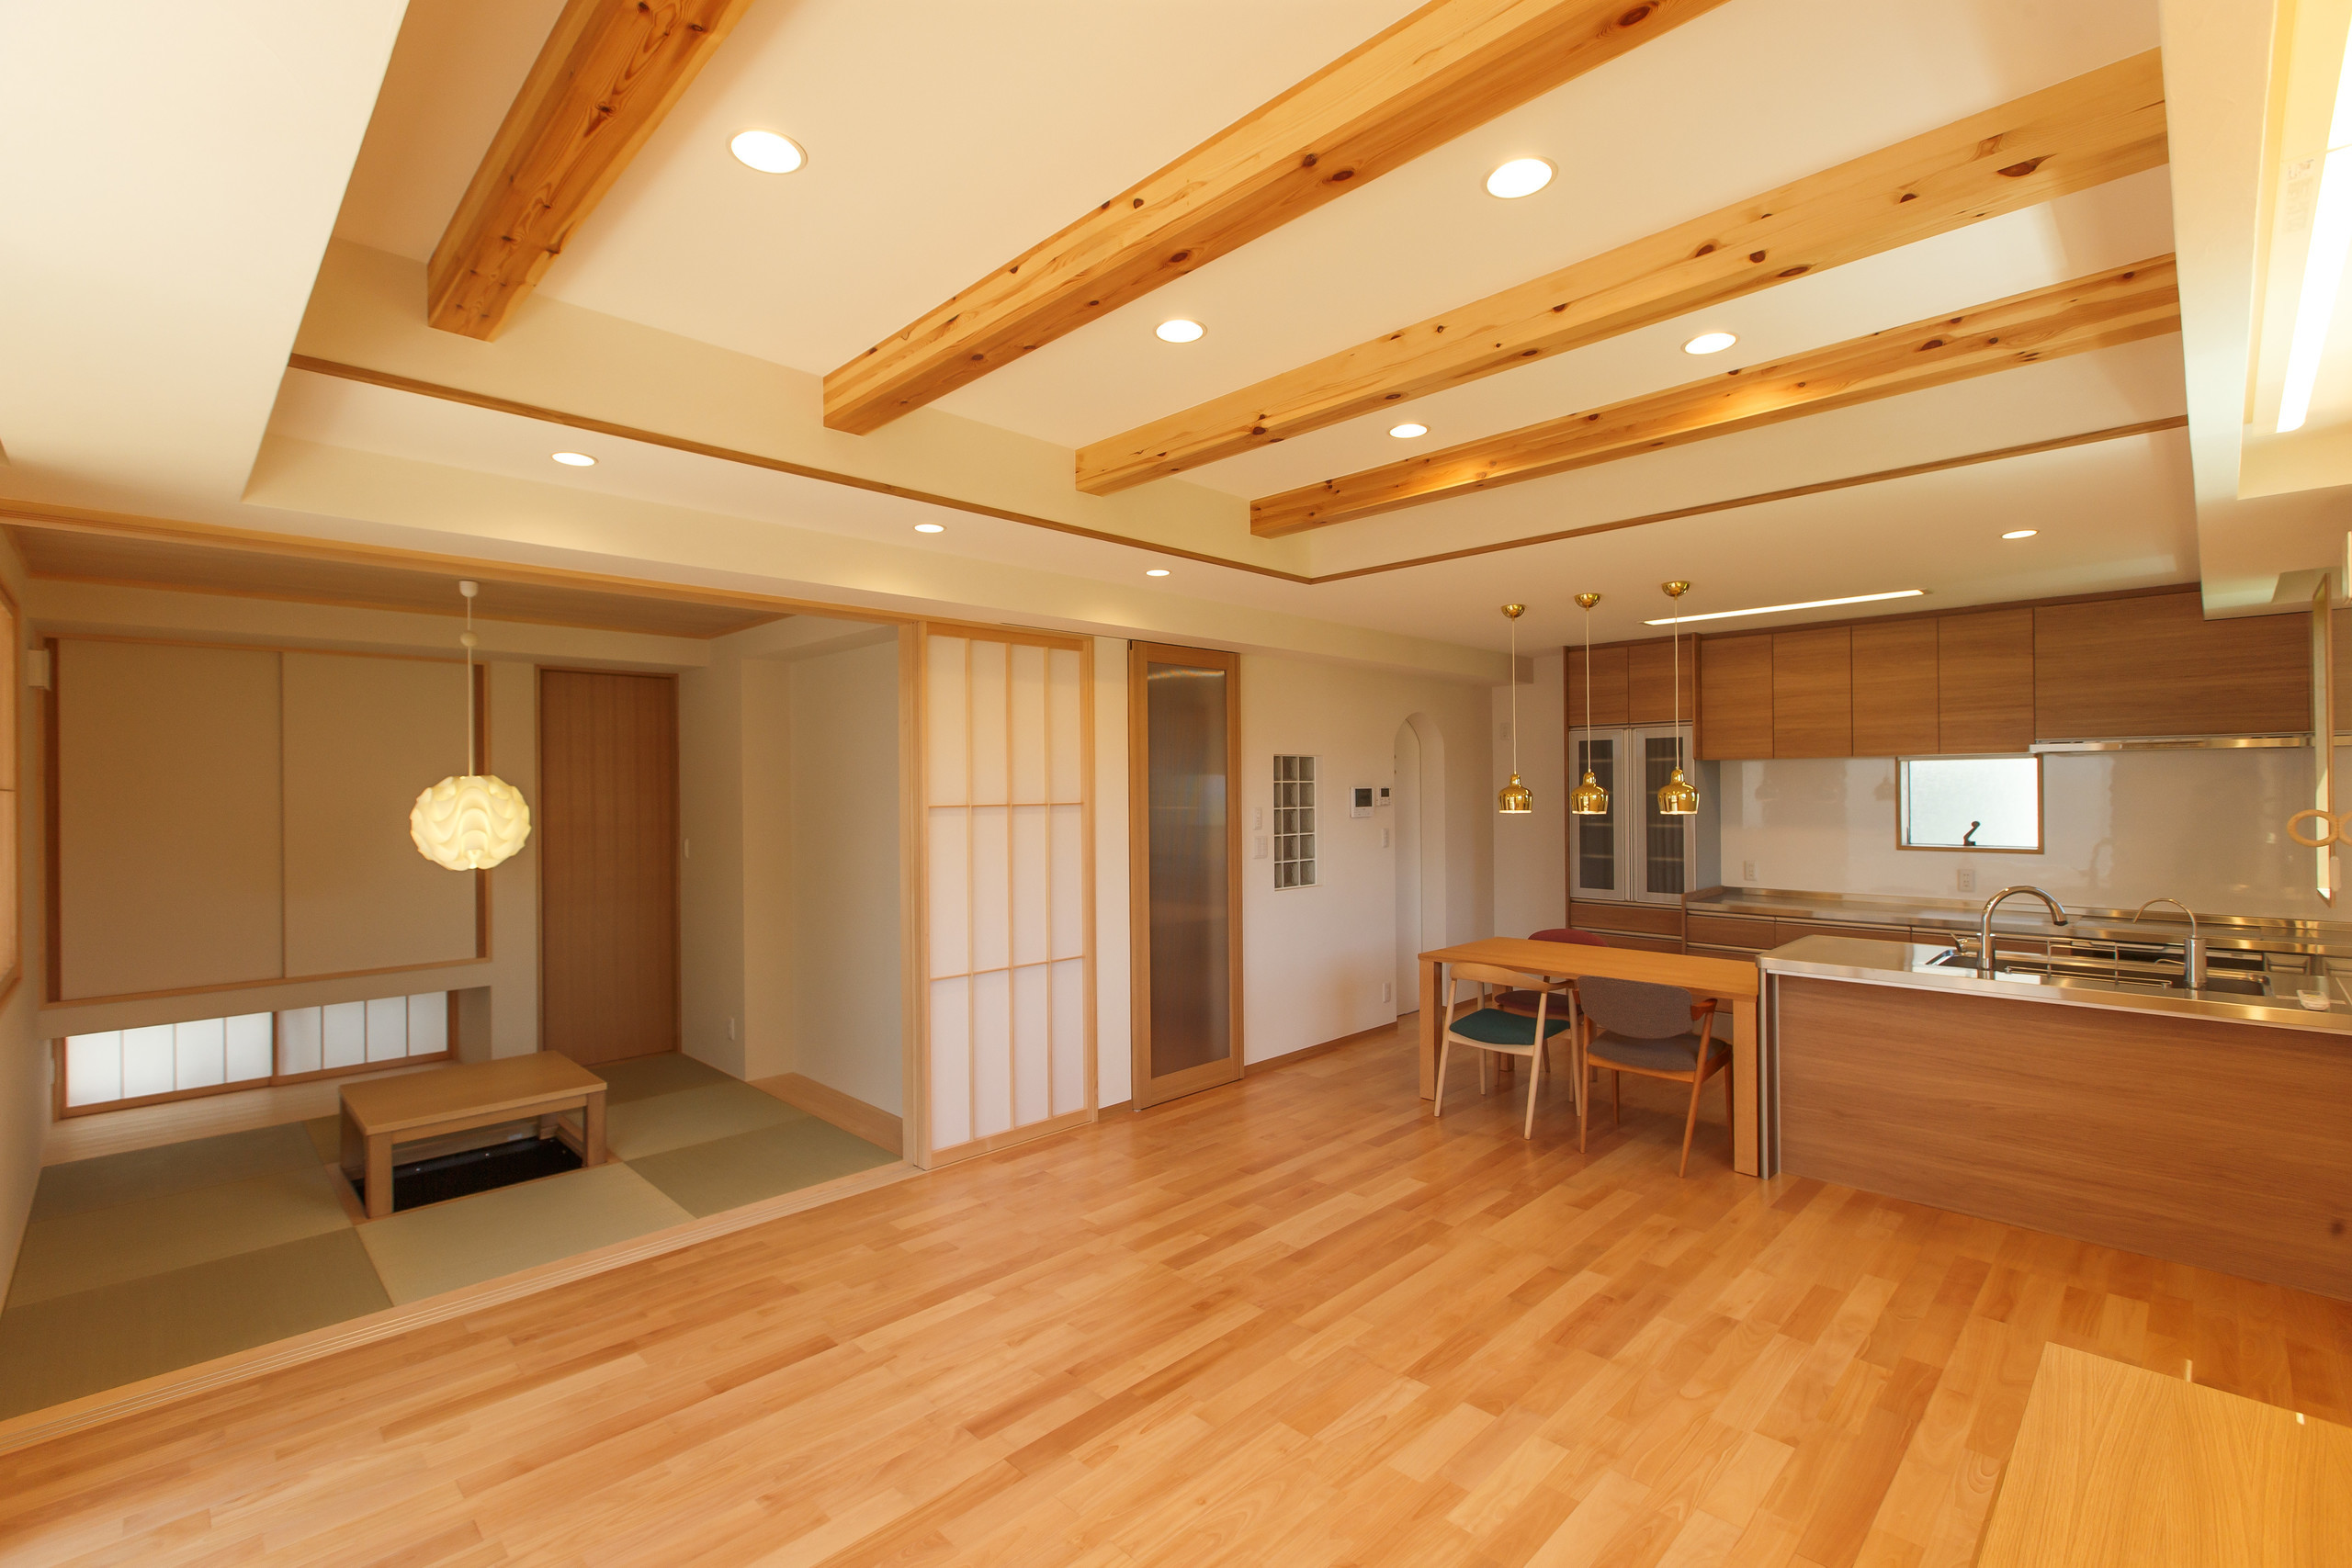 北欧風のデザインの中にも、天井から大胆にのぞく梁や掘りごたつの和室が存在することで、日本人としての居心地のよさを確保している。 | 耐震性とデザイン性が共存する家